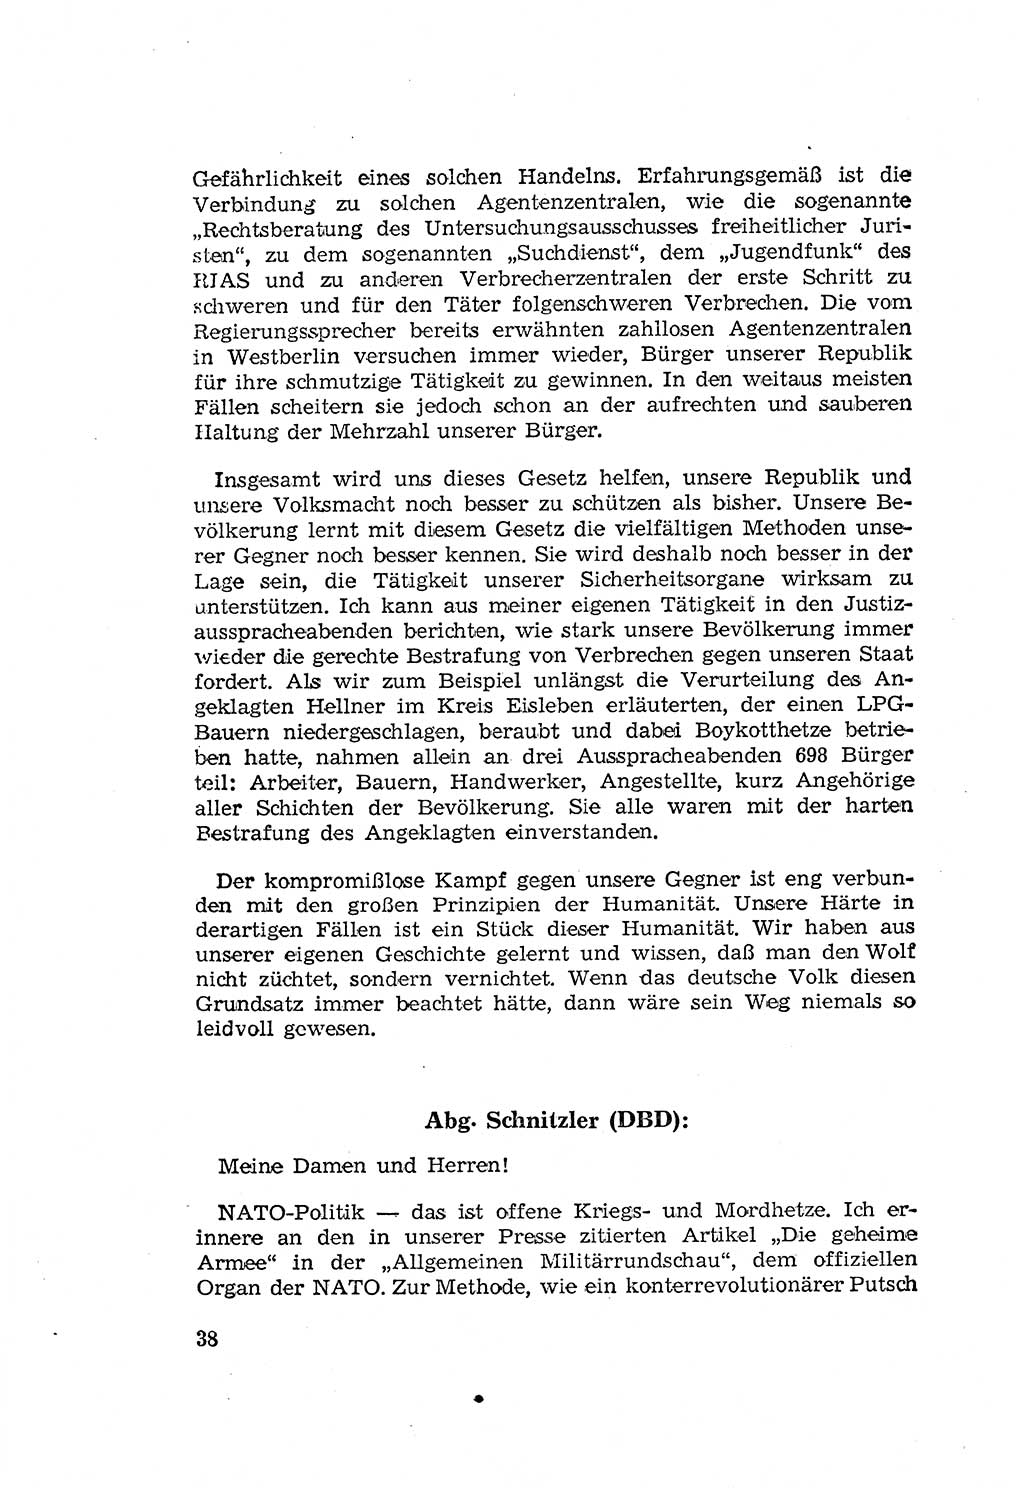 Zum Erlaß des Gesetzes zur Ergänzung des Strafgesetzbuches (StGB), Strafergänzungsgesetz (StEG) [Deutsche Demokratische Republik (DDR)] 1957, Seite 38 (StGB StEG DDR 1957, S. 38)